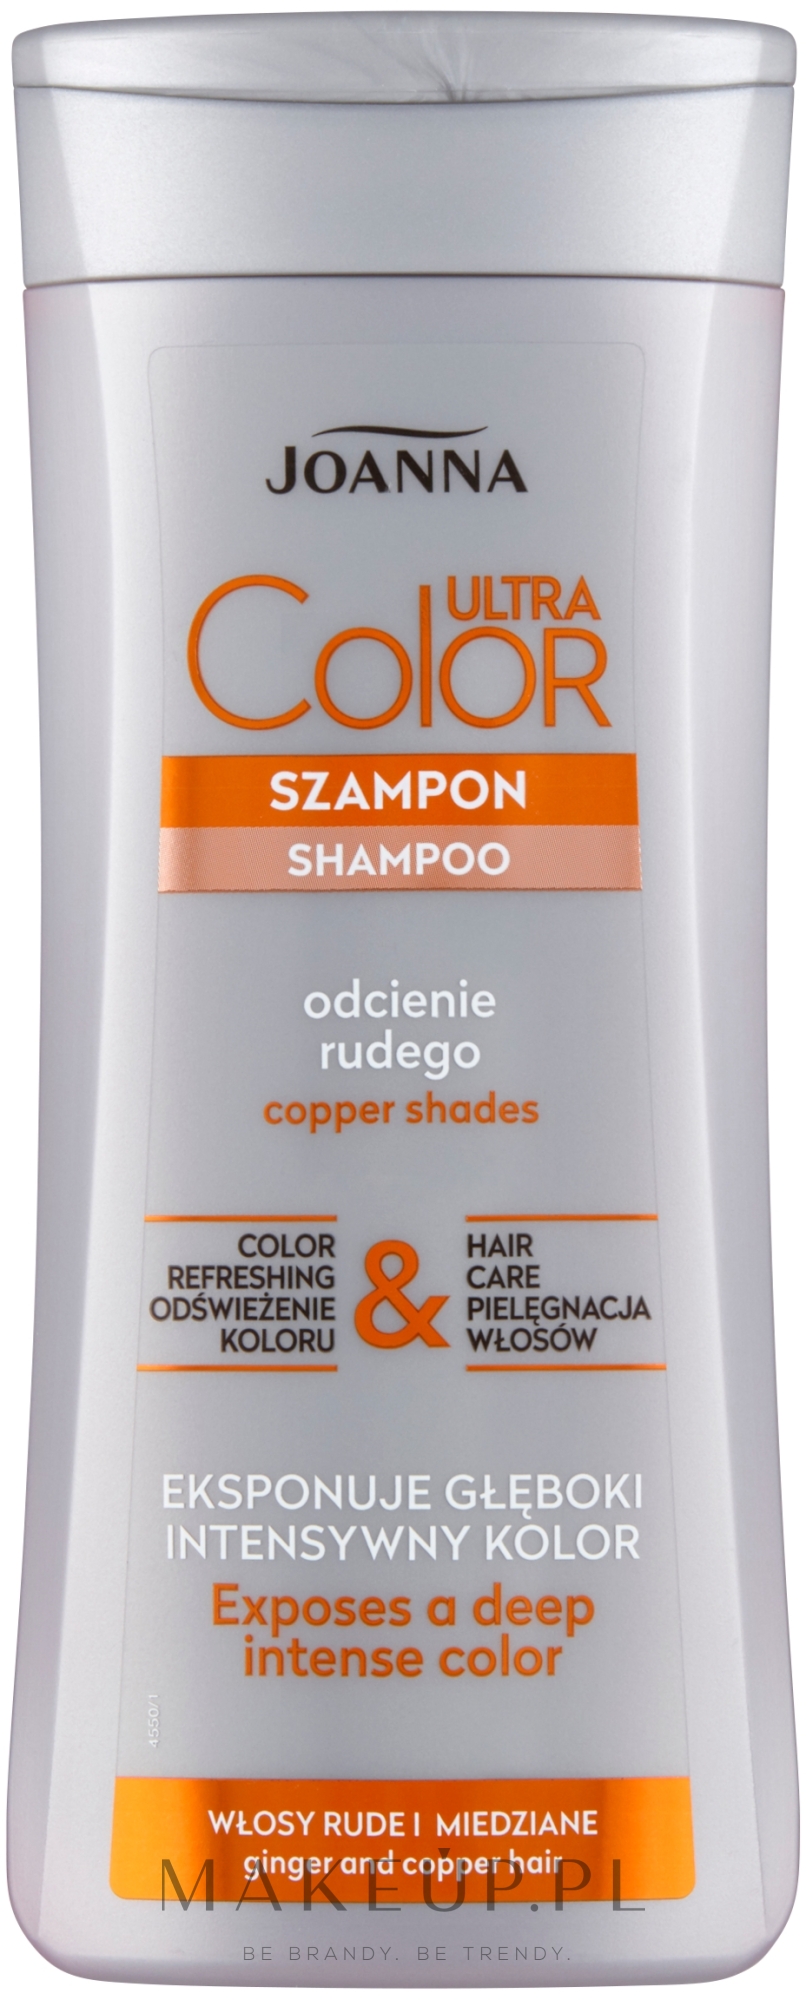 profesjonalny szampon do włosów rudych